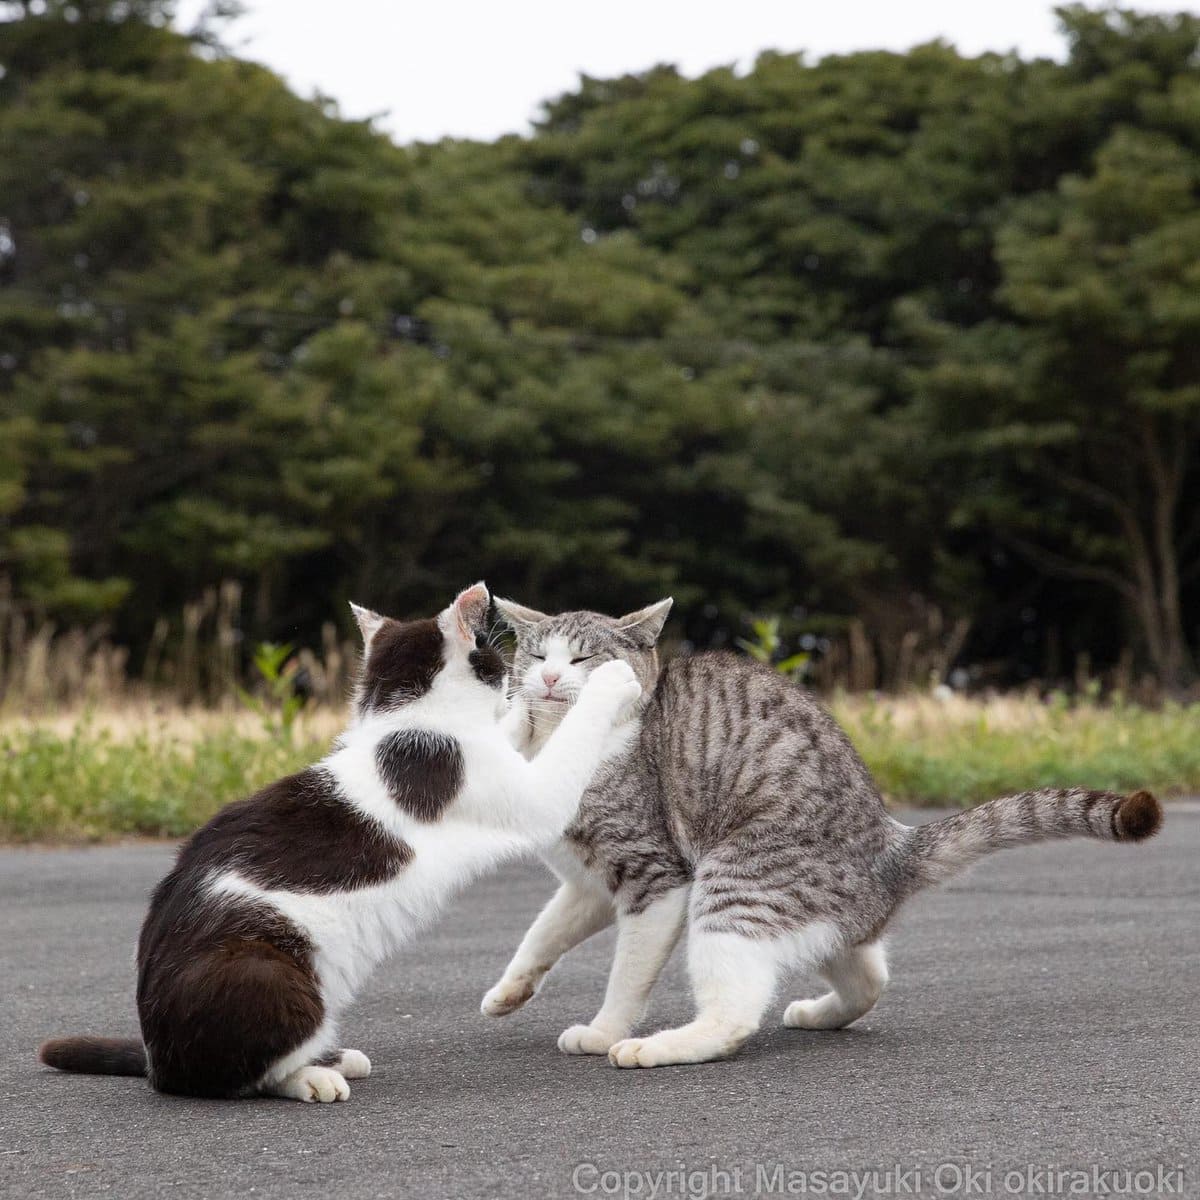 17 работ японского фотографа, который лучше всех в мире умеет снимать уличных котов 59